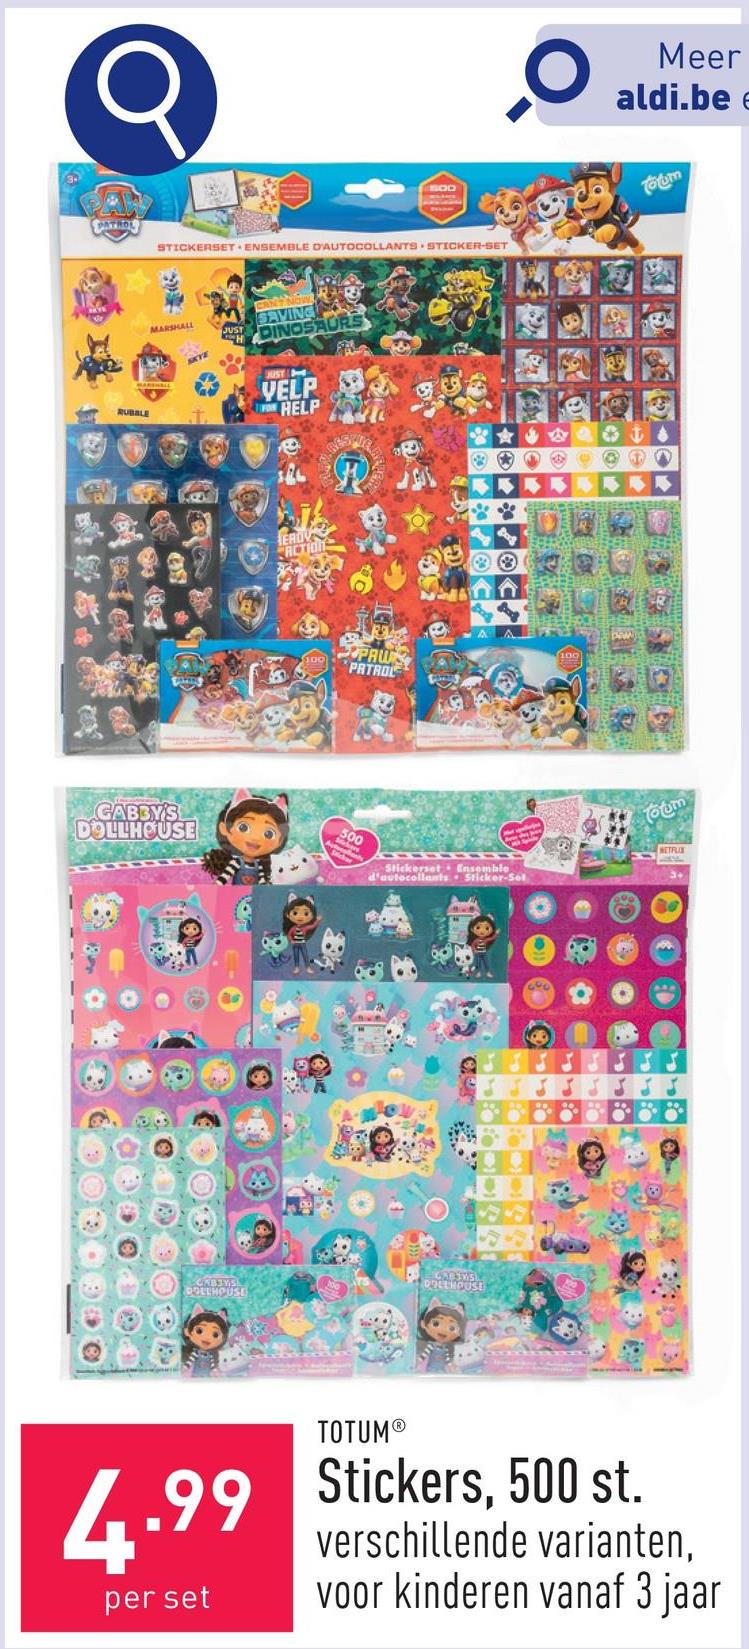 Stickers, 500 st. keuze uit verschillende varianten, geschikt voor kinderen vanaf 3 jaar